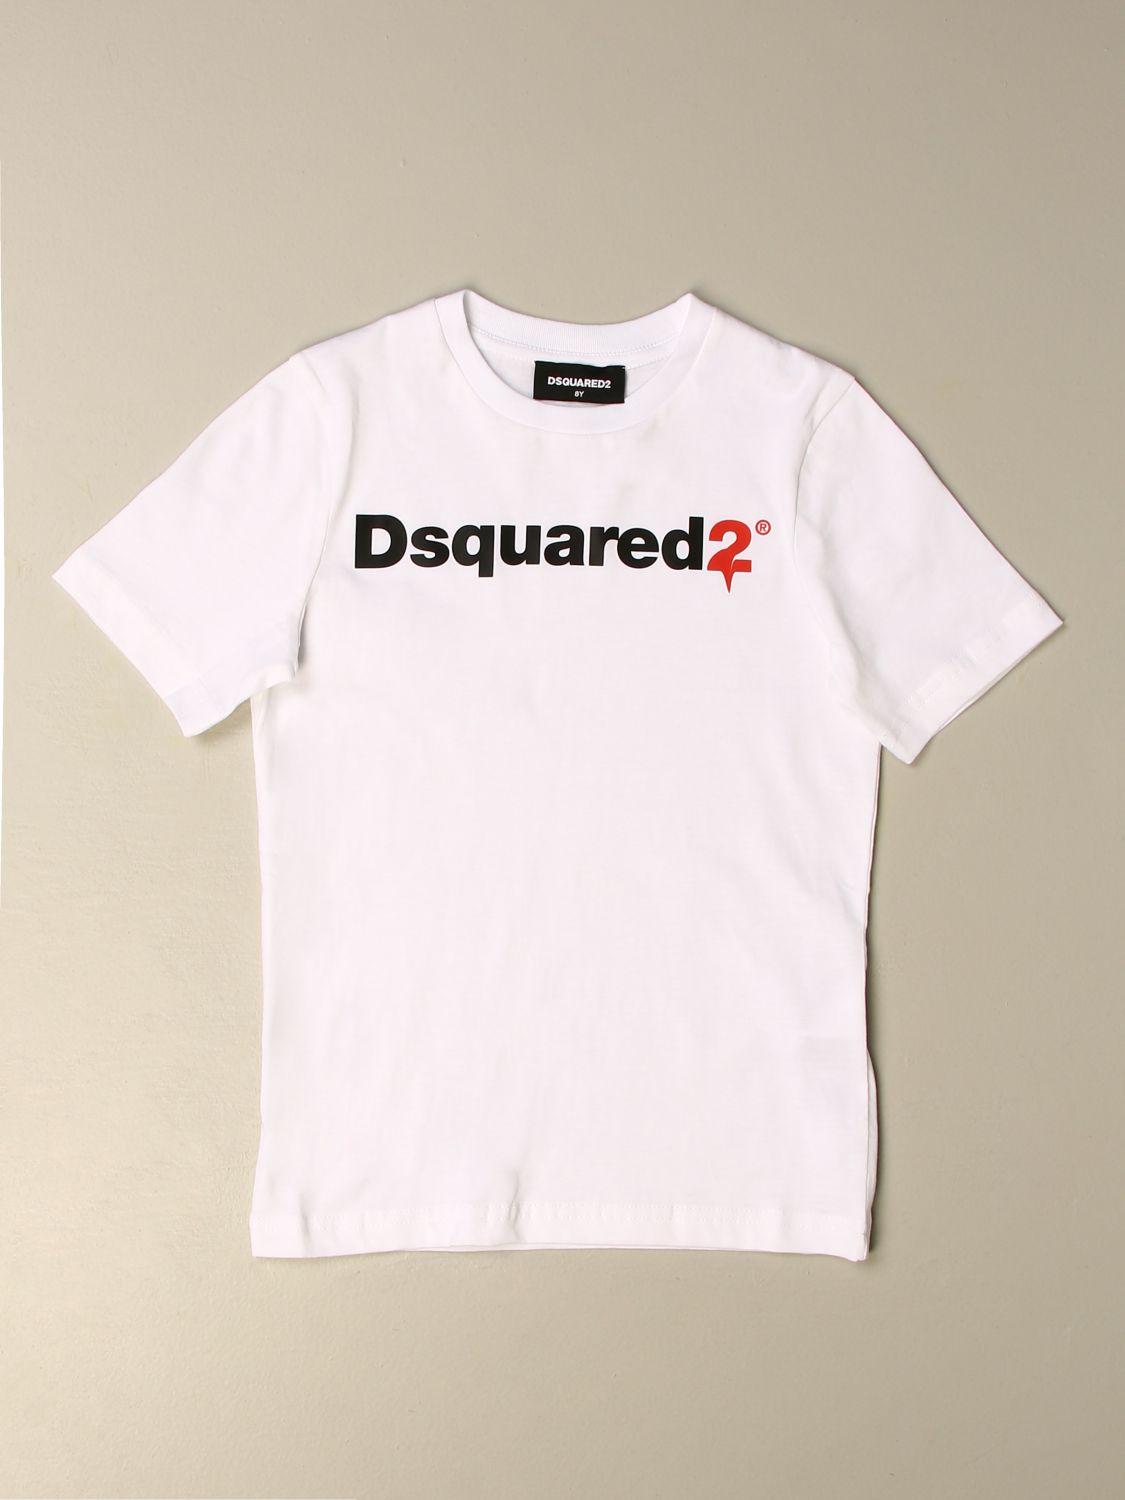 dsquared2 junior t shirt